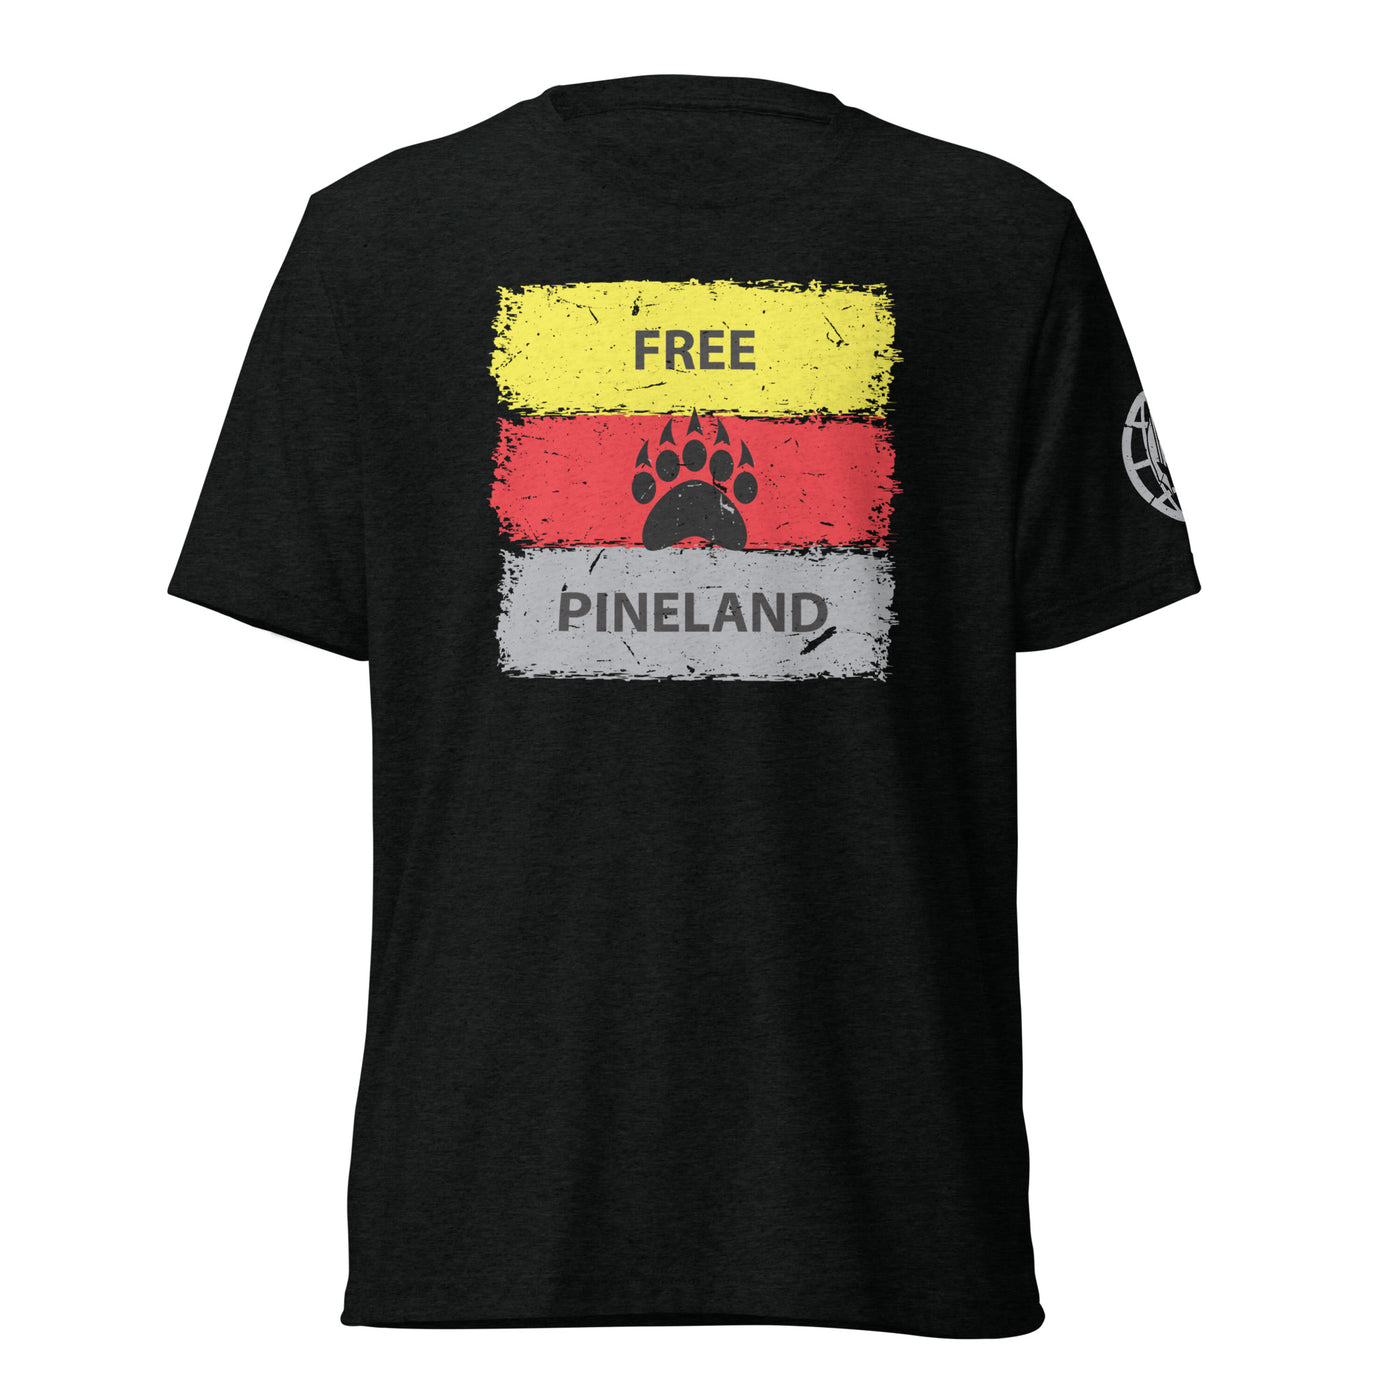 Free Pineland